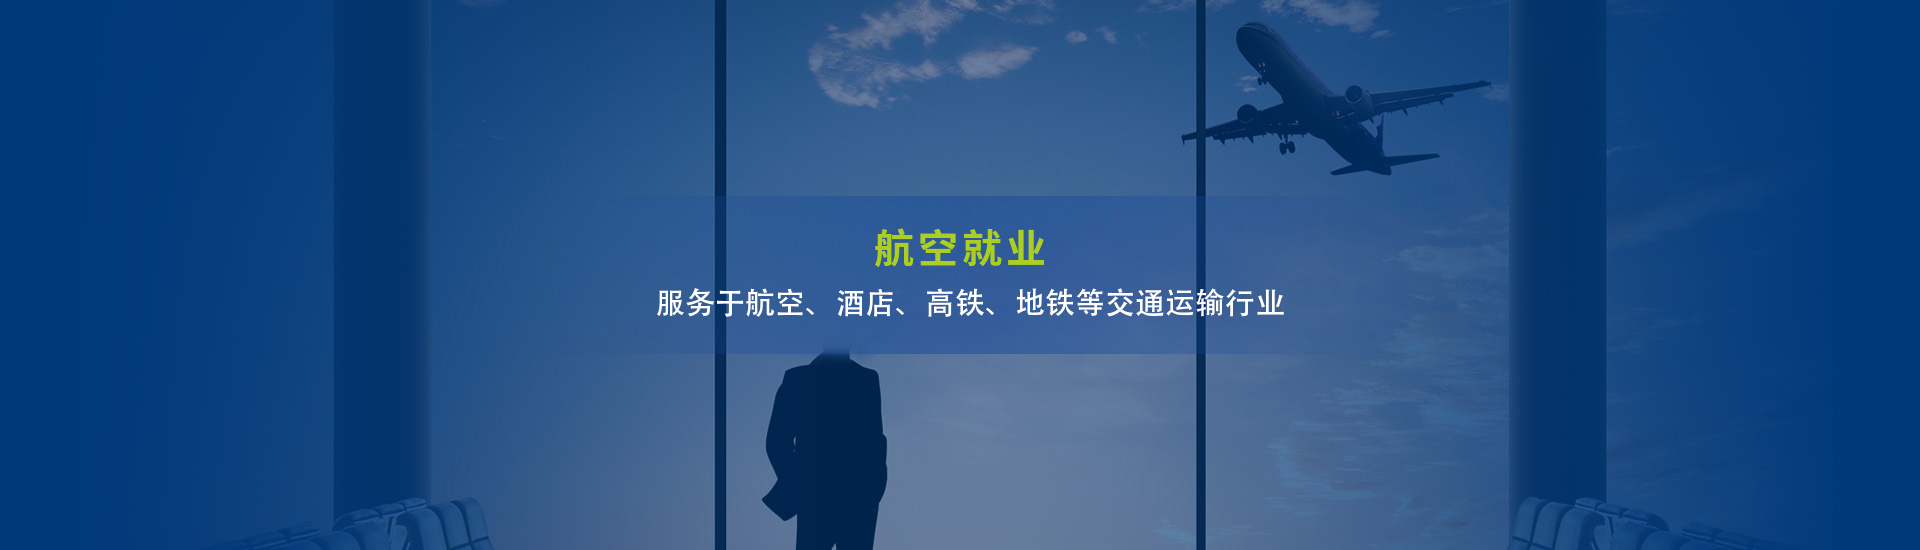 玩球网站(中国)责任有限公司就业